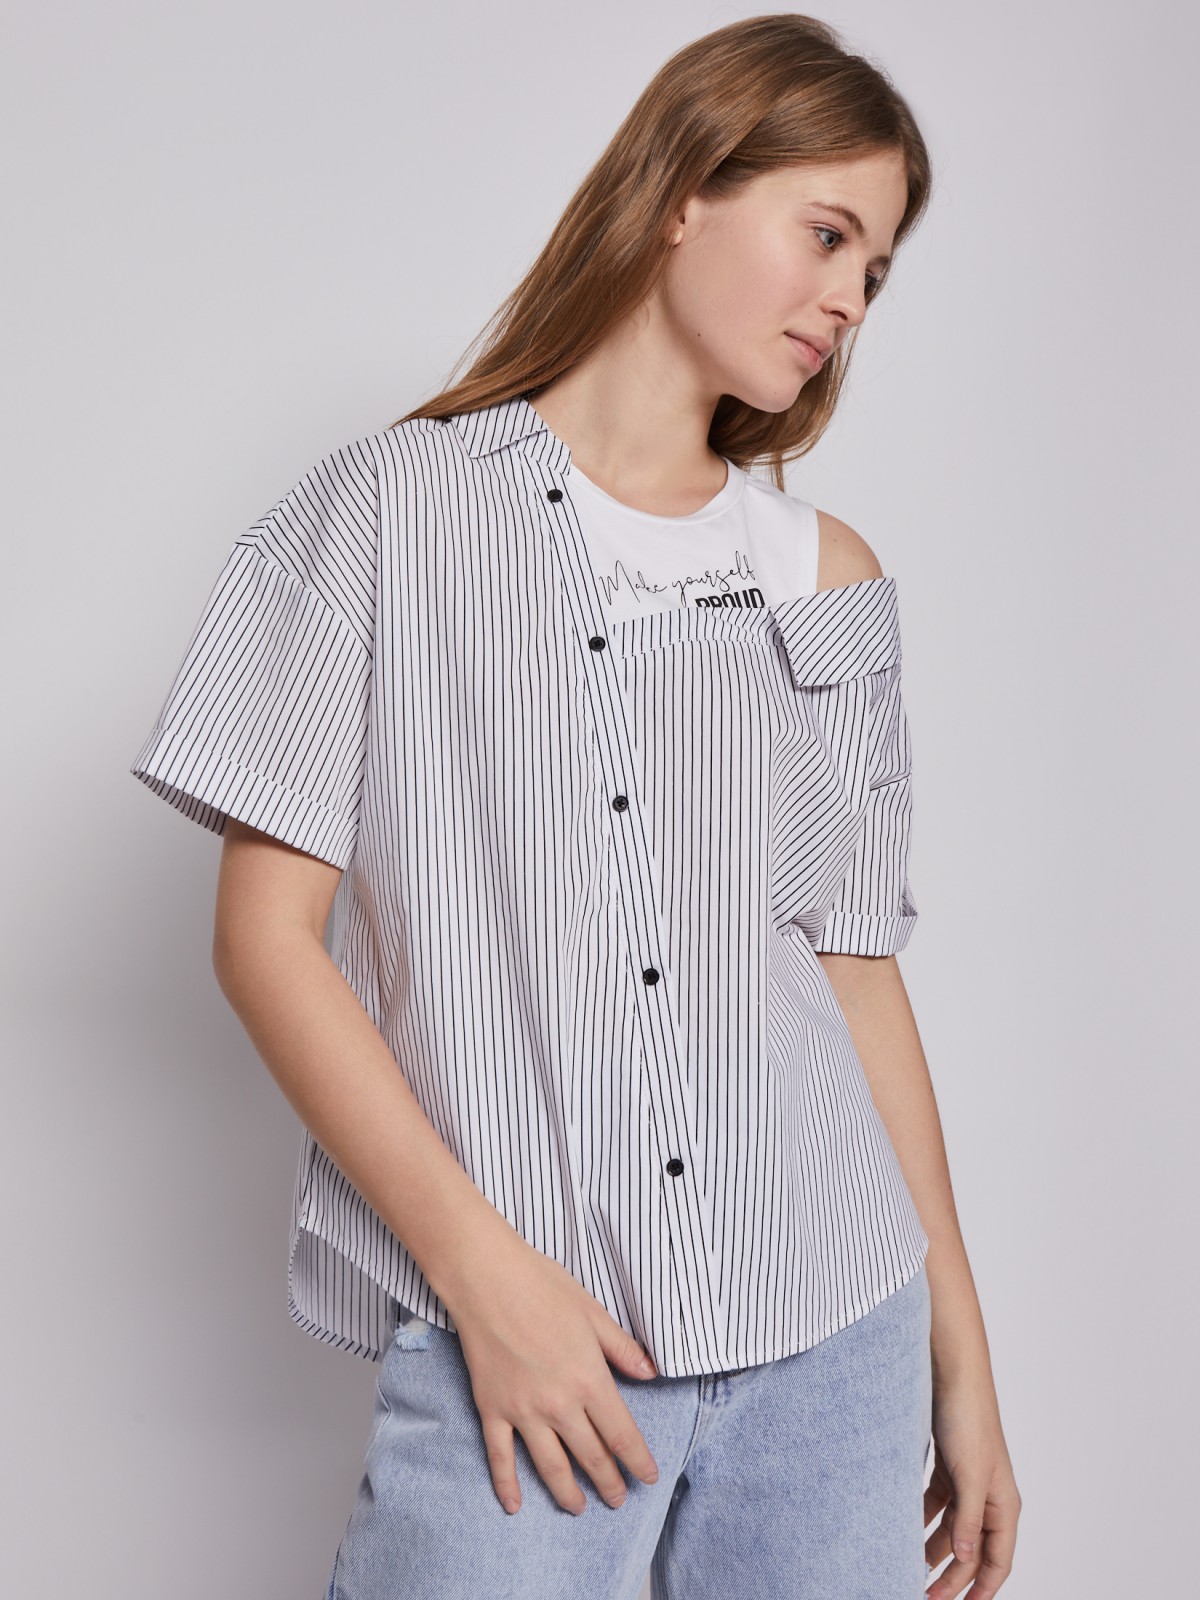 Комбинированная блузка-рубашка с топом